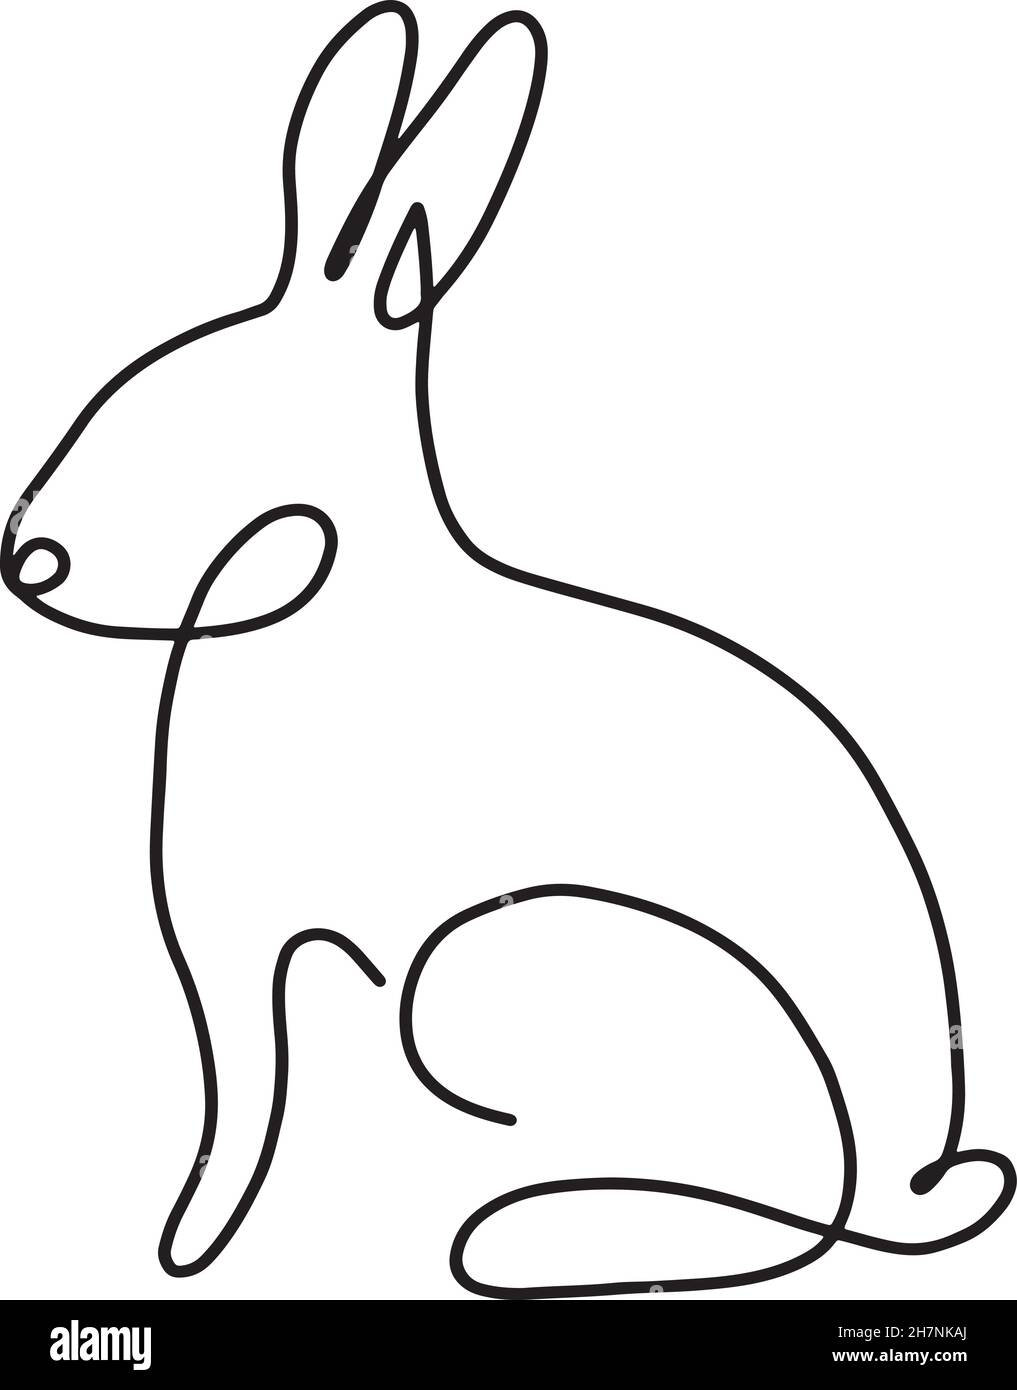 Lapin Bunny vecteur d'une ligne art. Abstract lapin dessin icône de contour.Portrait minimaliste moderne en noir et blanc dessiné à la main Illustration de Vecteur